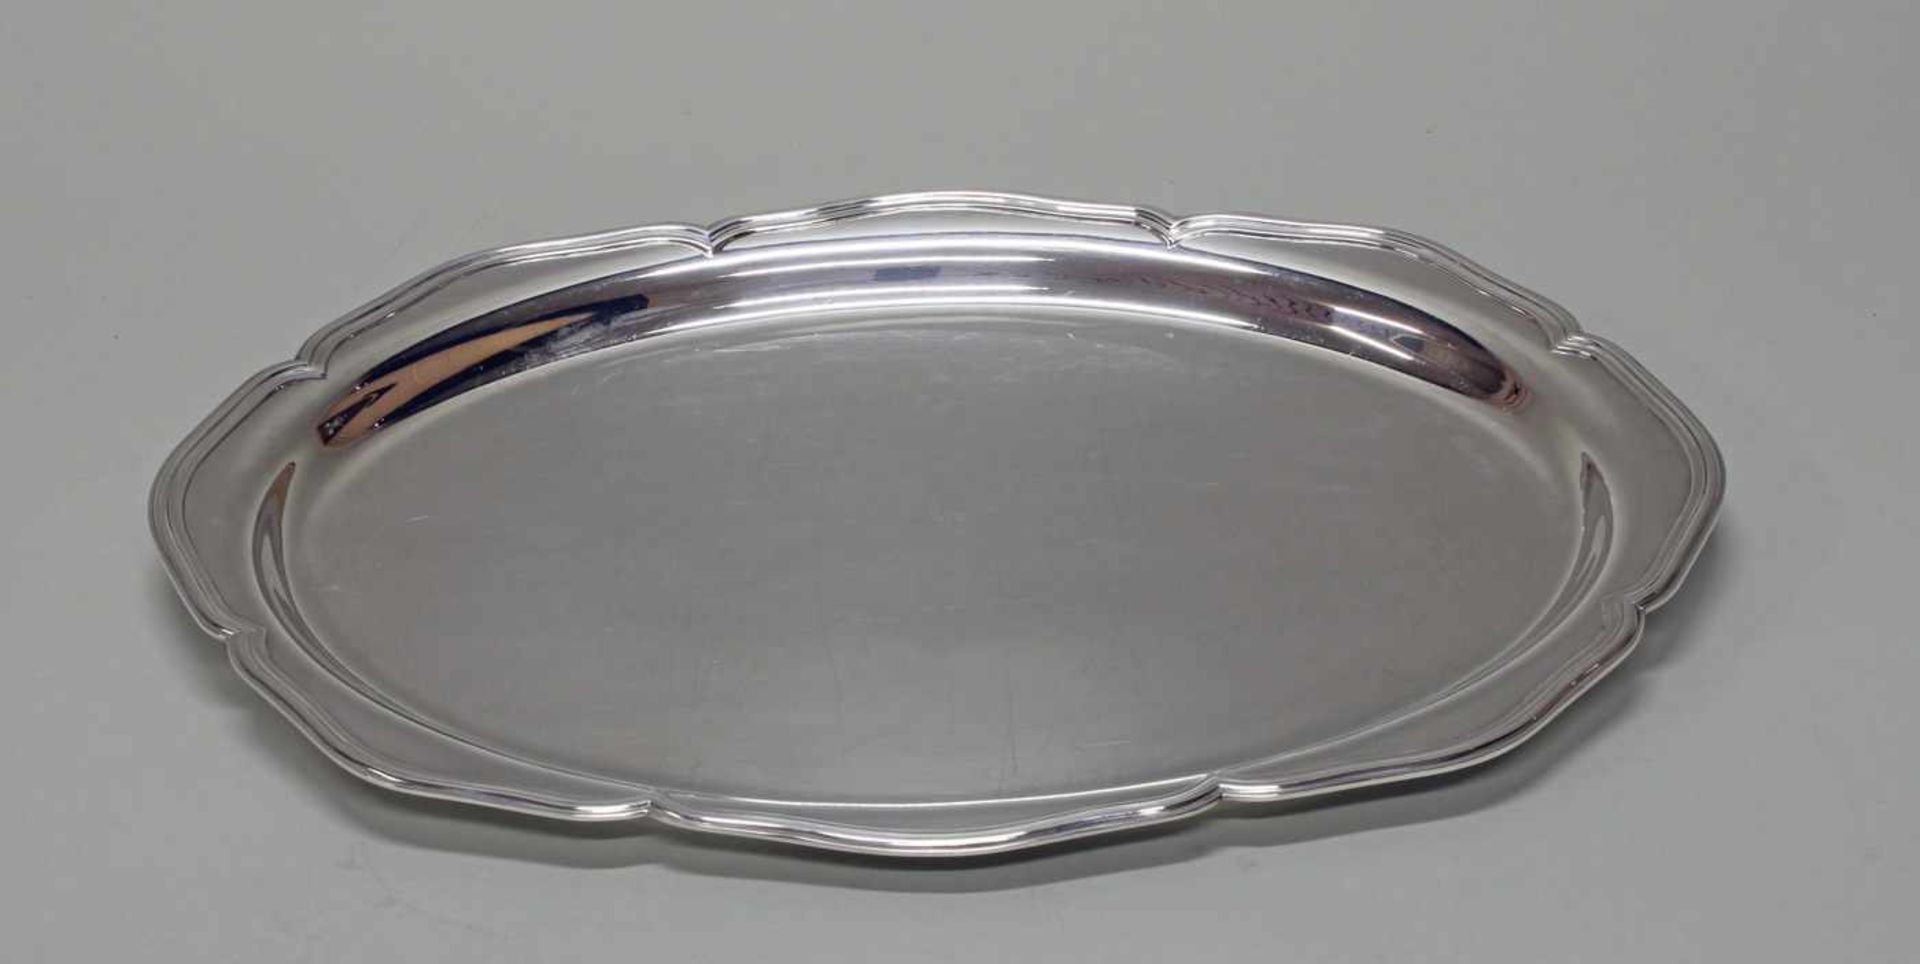 Vorlegeplatte, Silber 826, Dänemark, 1953, Carl M. Cohr, oval, passig-geschweifter Profilrand, 45